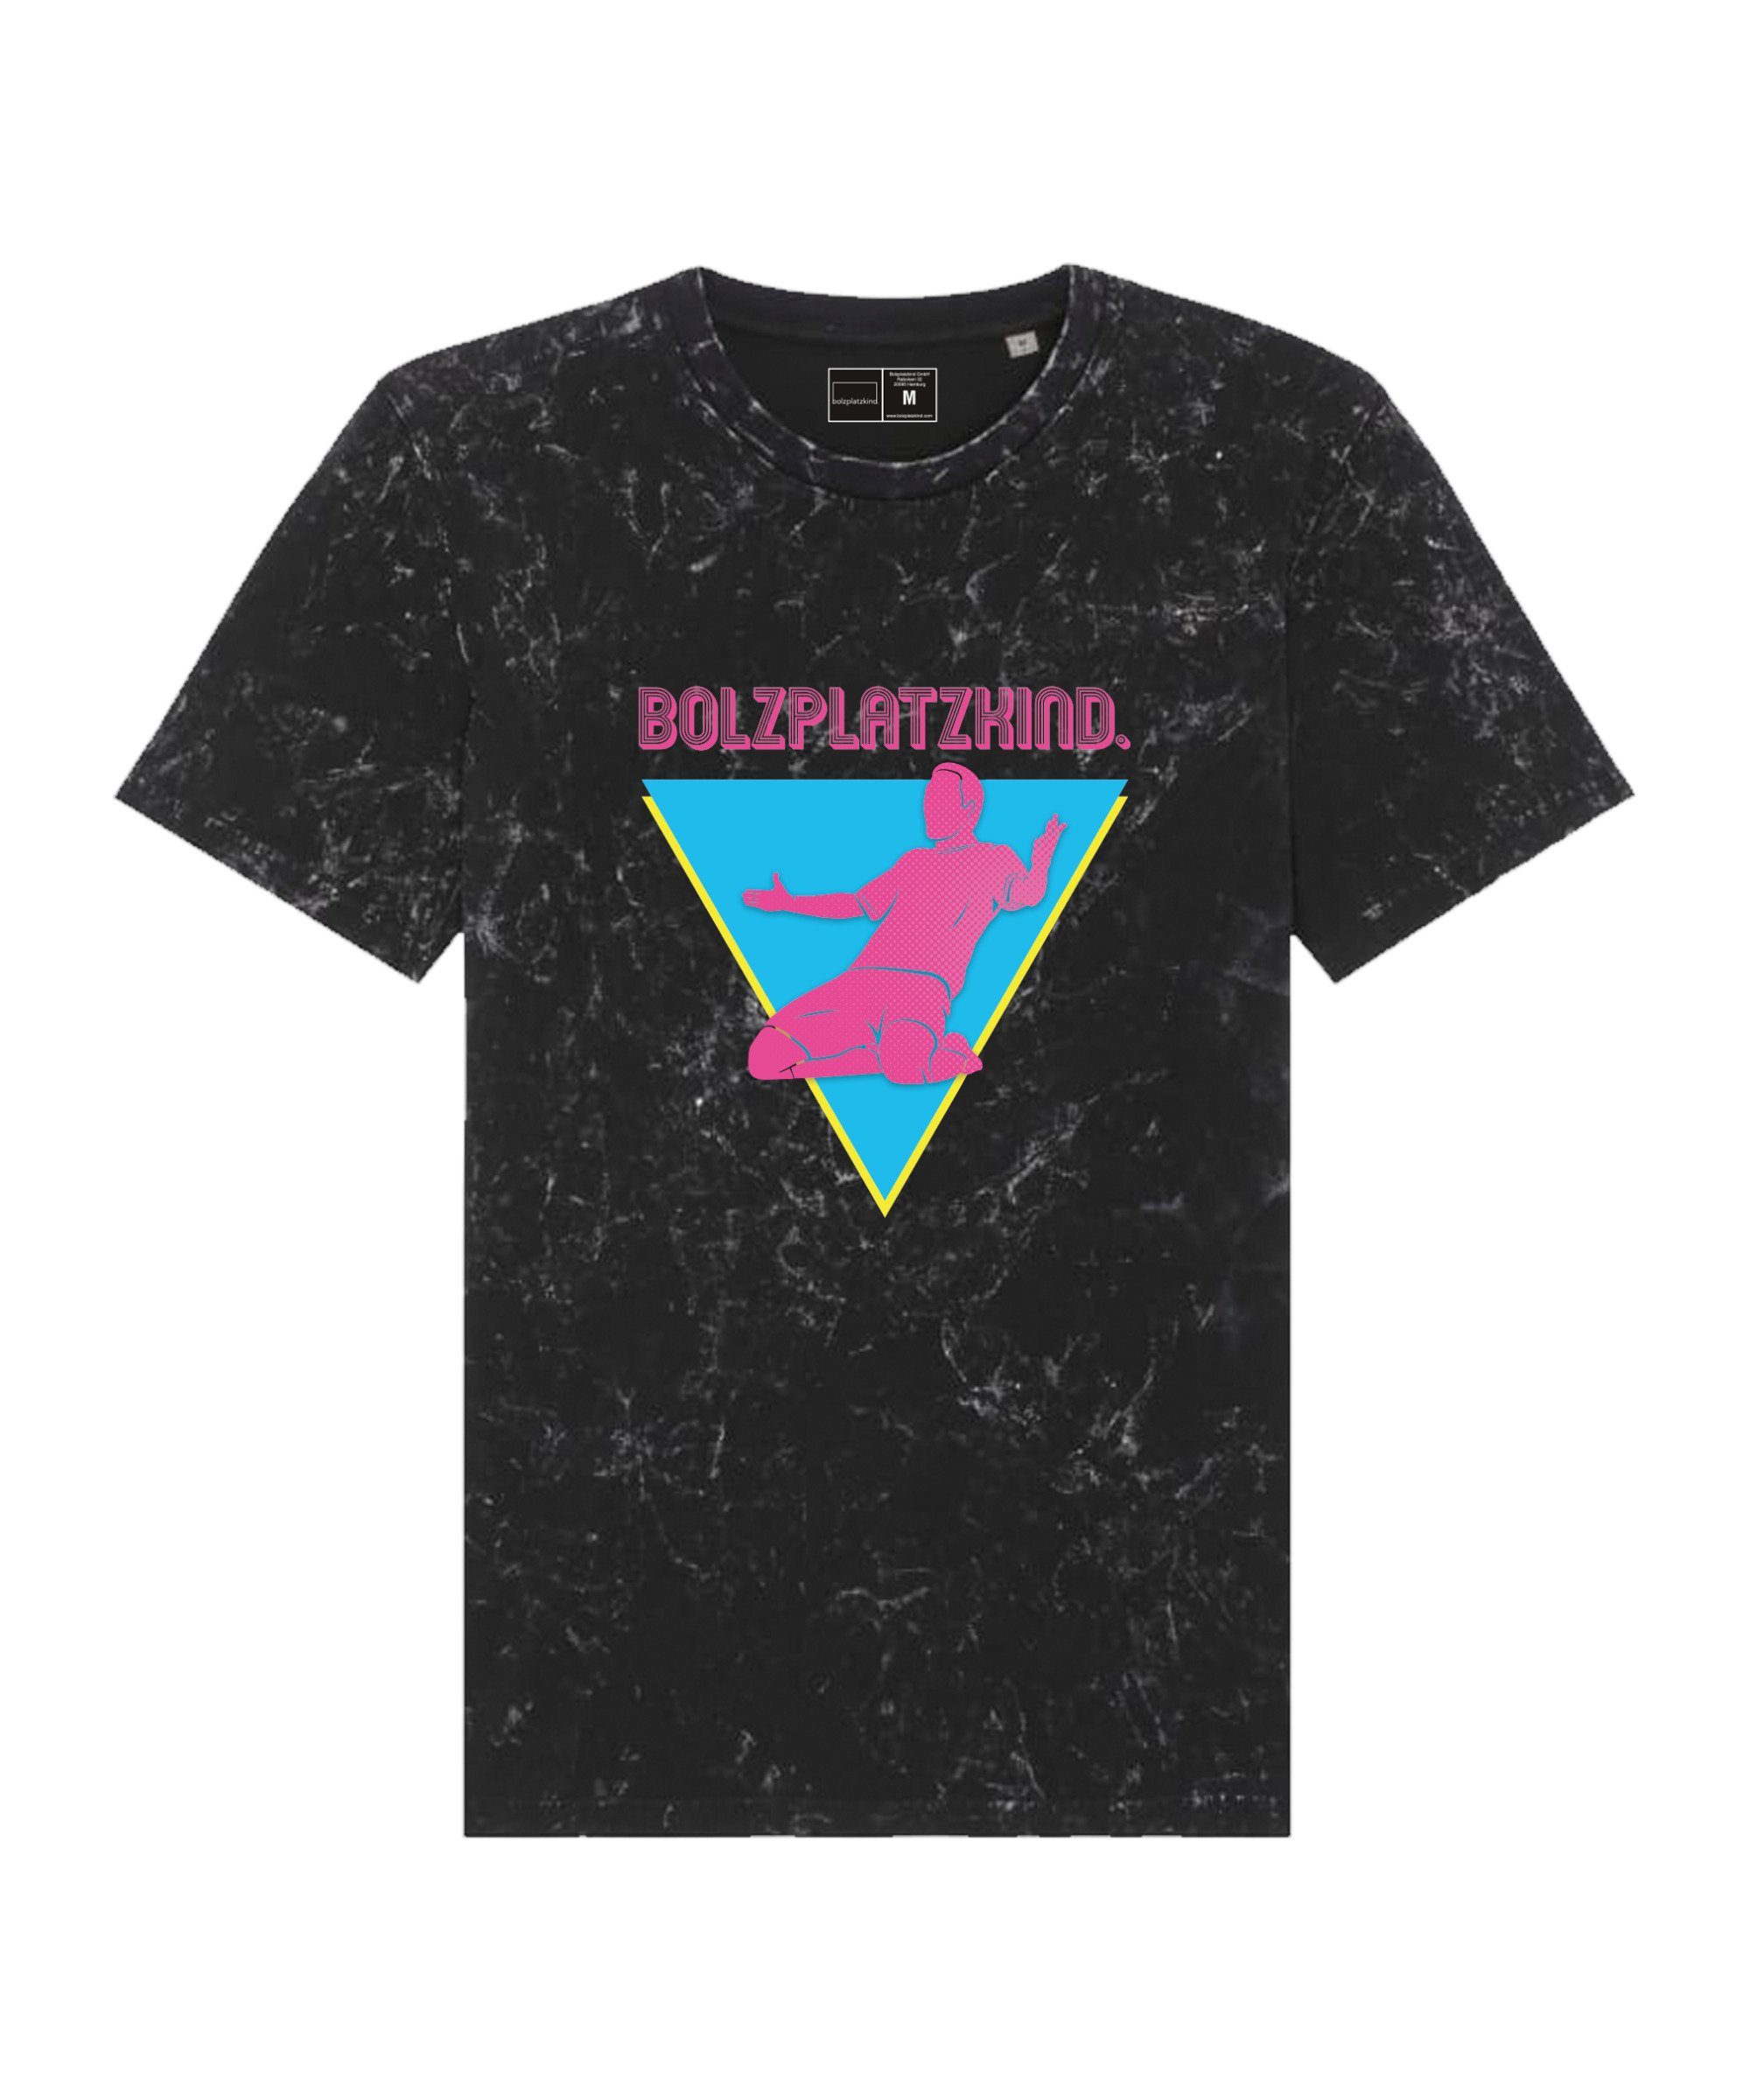 Bolzplatzkind T-Shirt "80er Jahre" Straddle T-Shirt default schwarzpinkblau